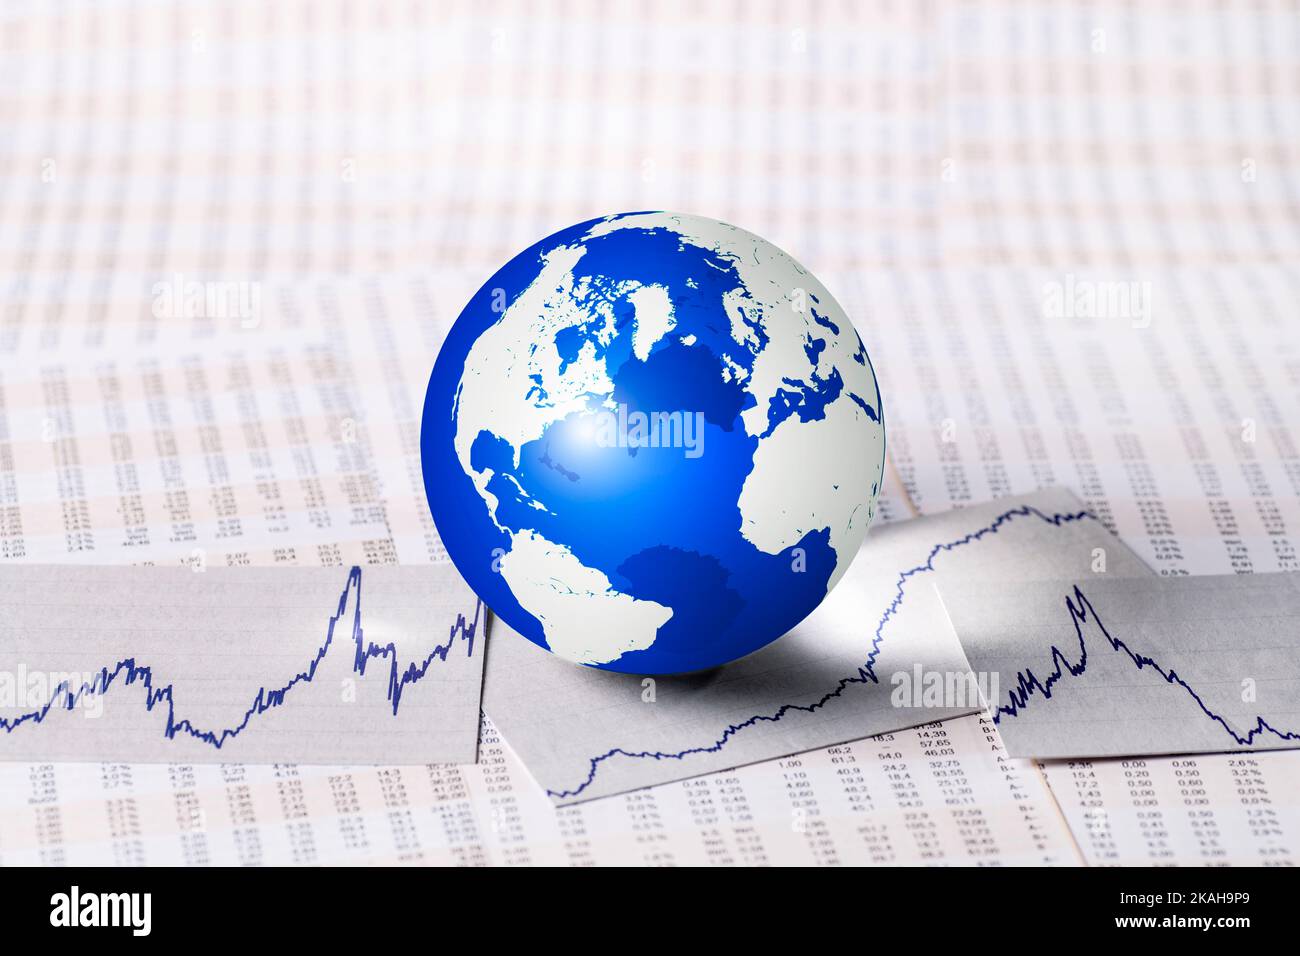 Globus mit Preistabellen und Kurven als Symbol für die Entwicklung der Märkte Stockfoto